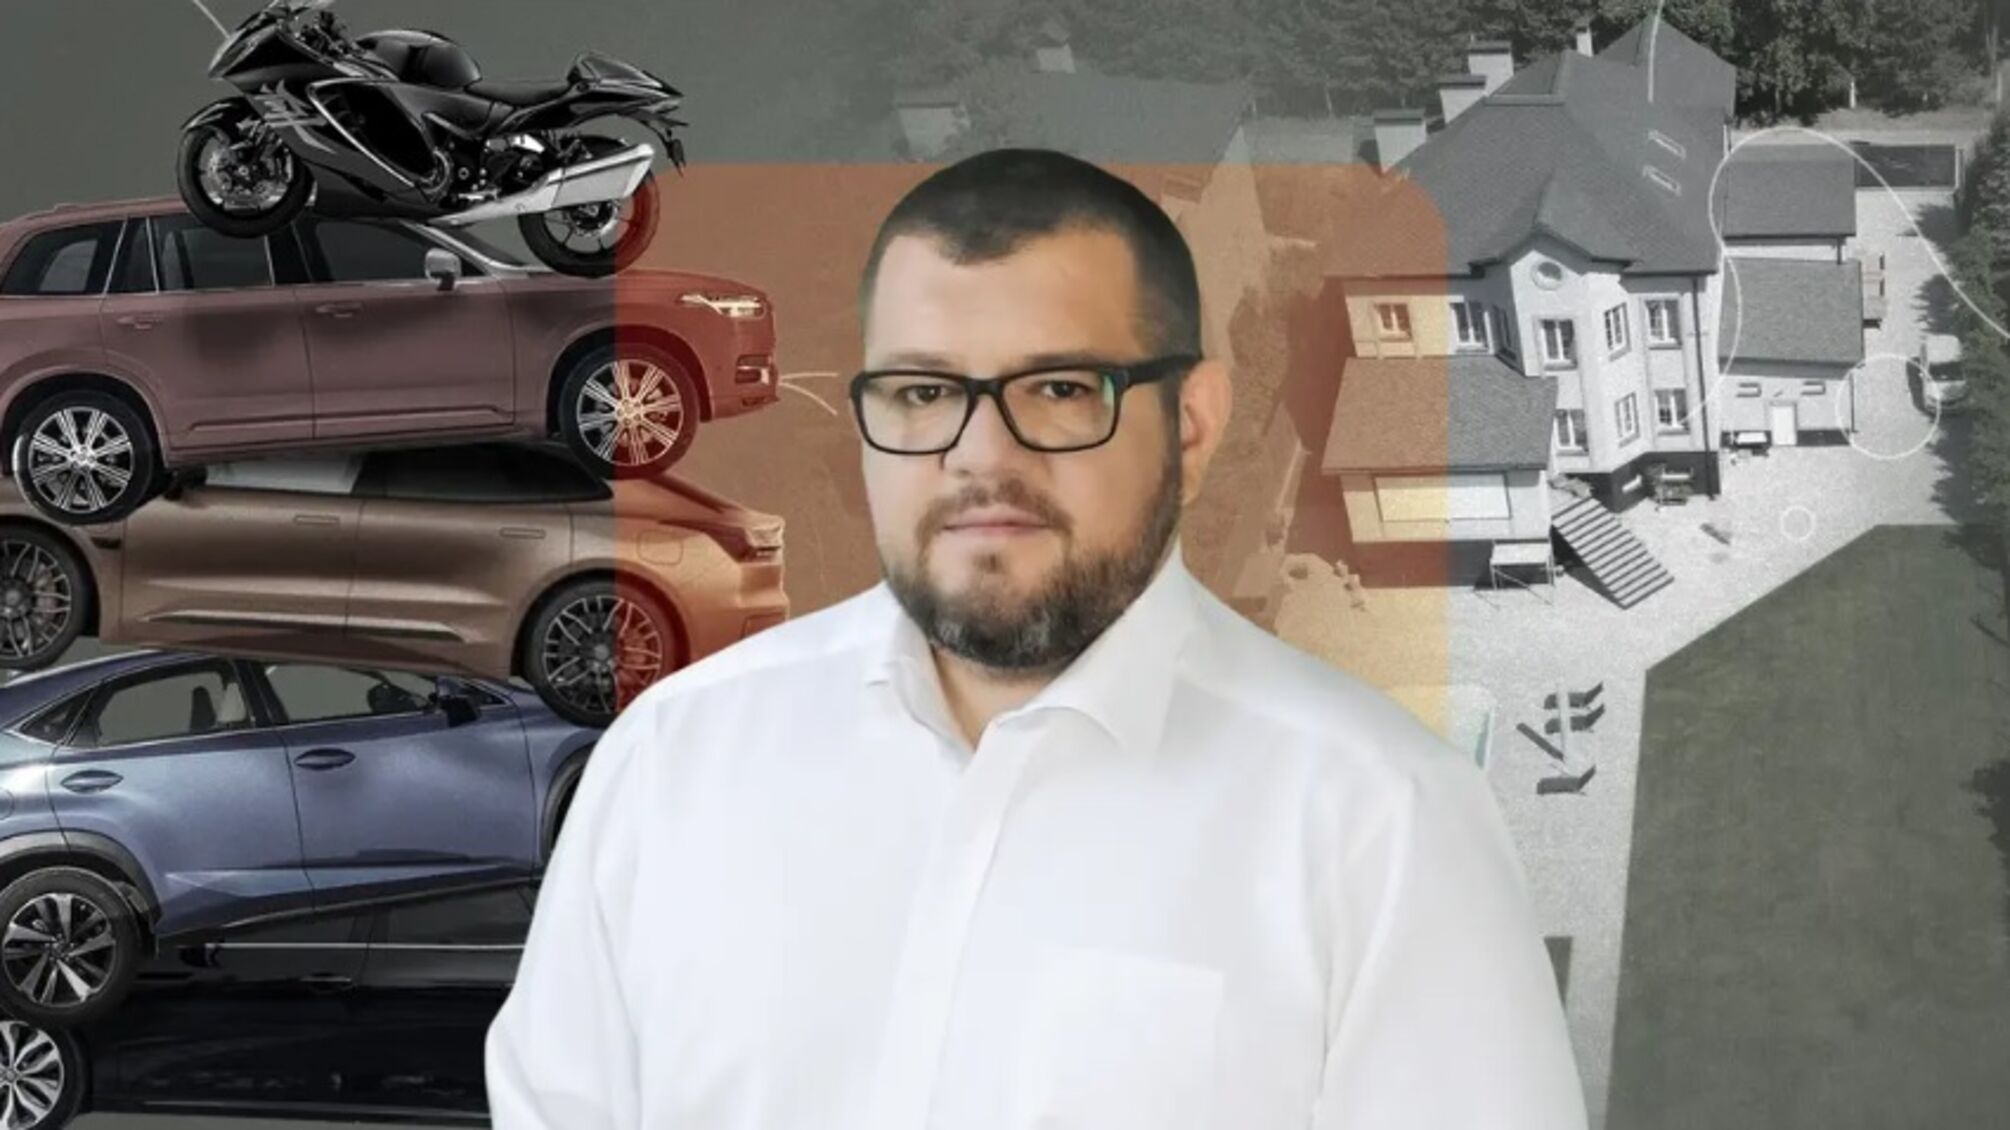 Автопарк на $200 тысяч и вилла под Киевом: броварской депутат Галушко записал состояние на родителей — расследование